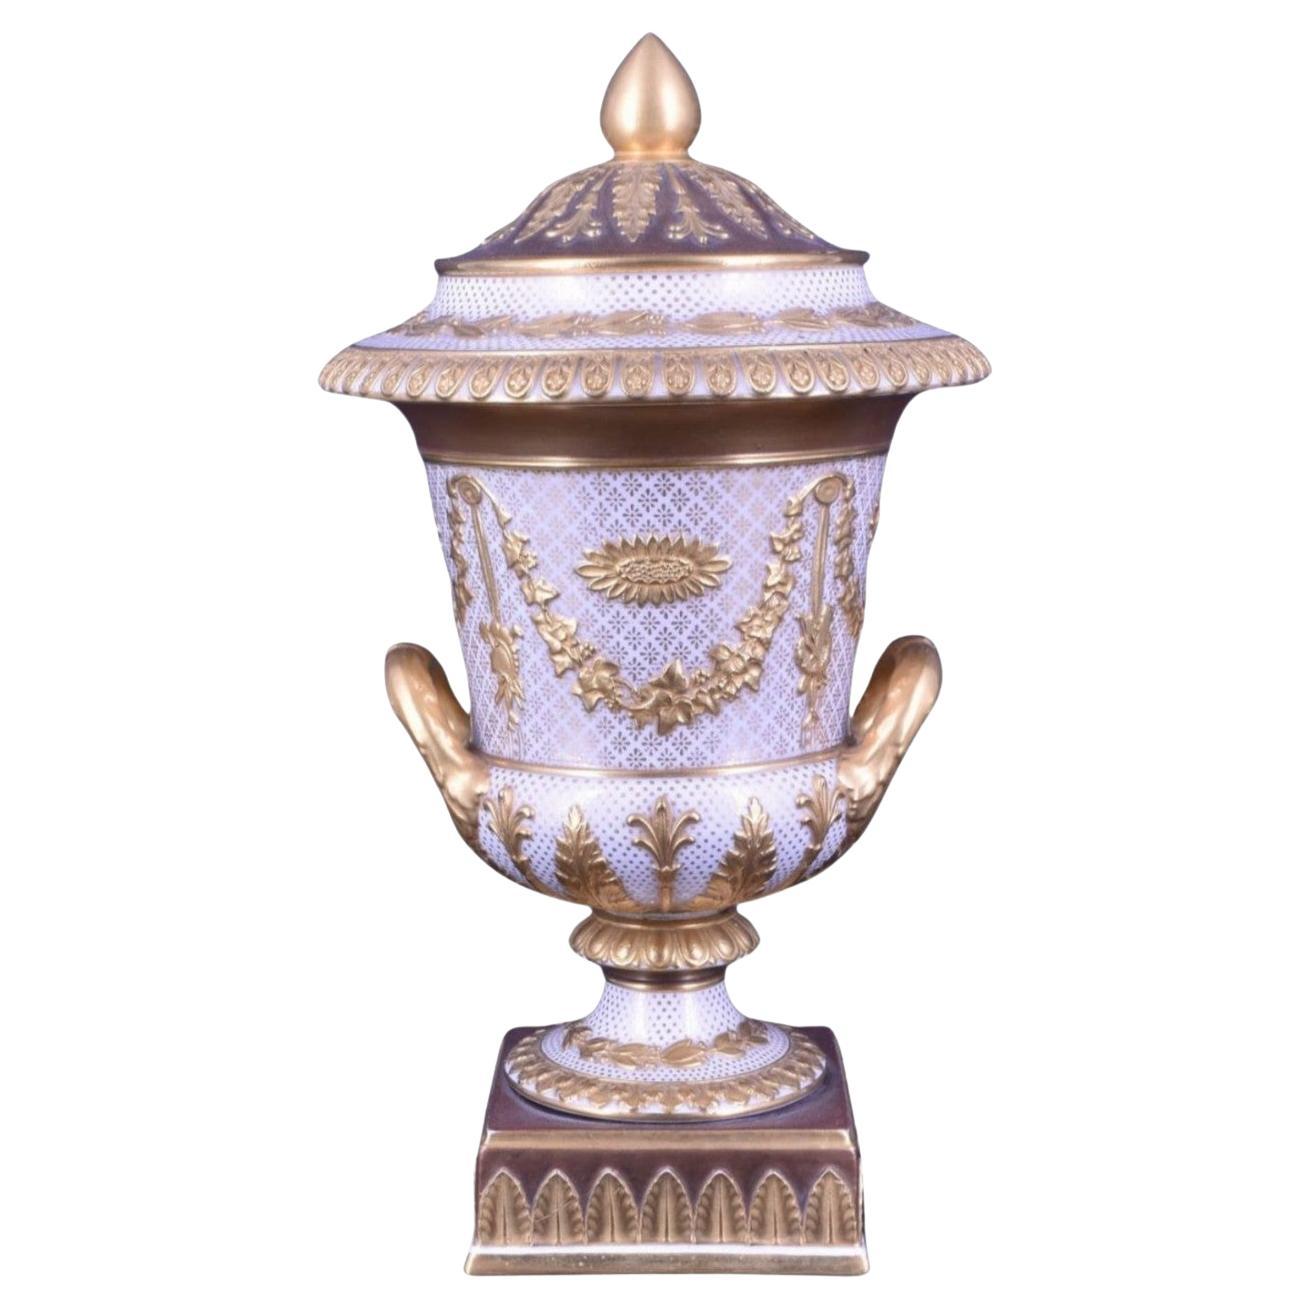 Vase campana Victoriaware blanc avec décoration dorée Wedgwood C1880.